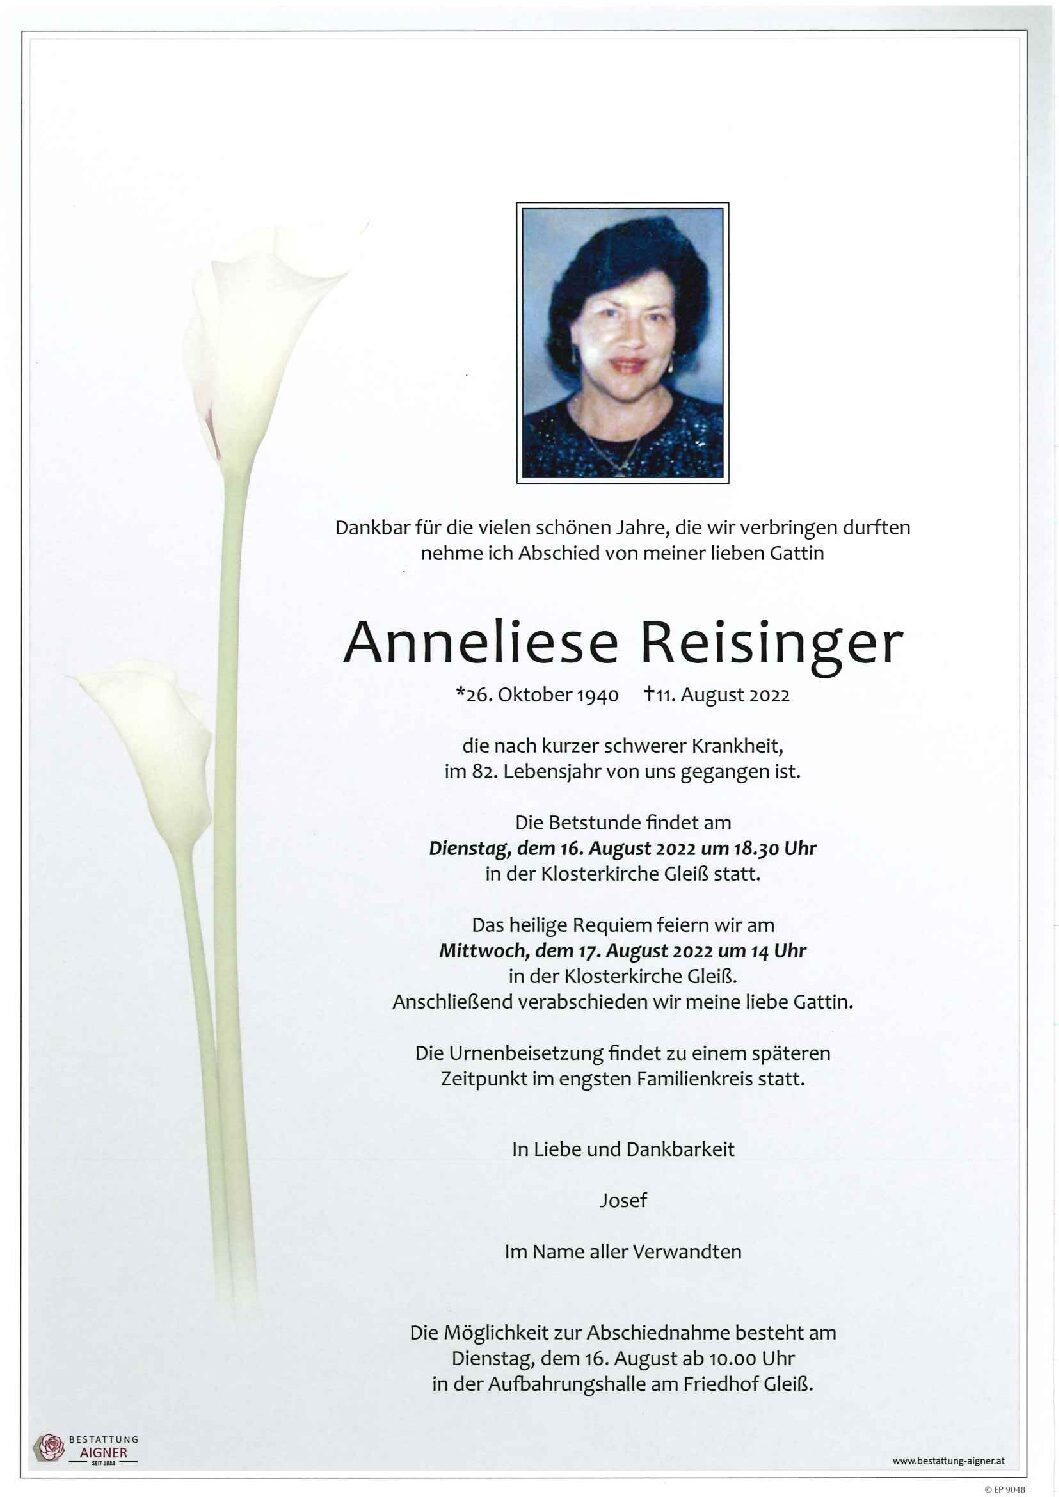 Anneliese Reisinger